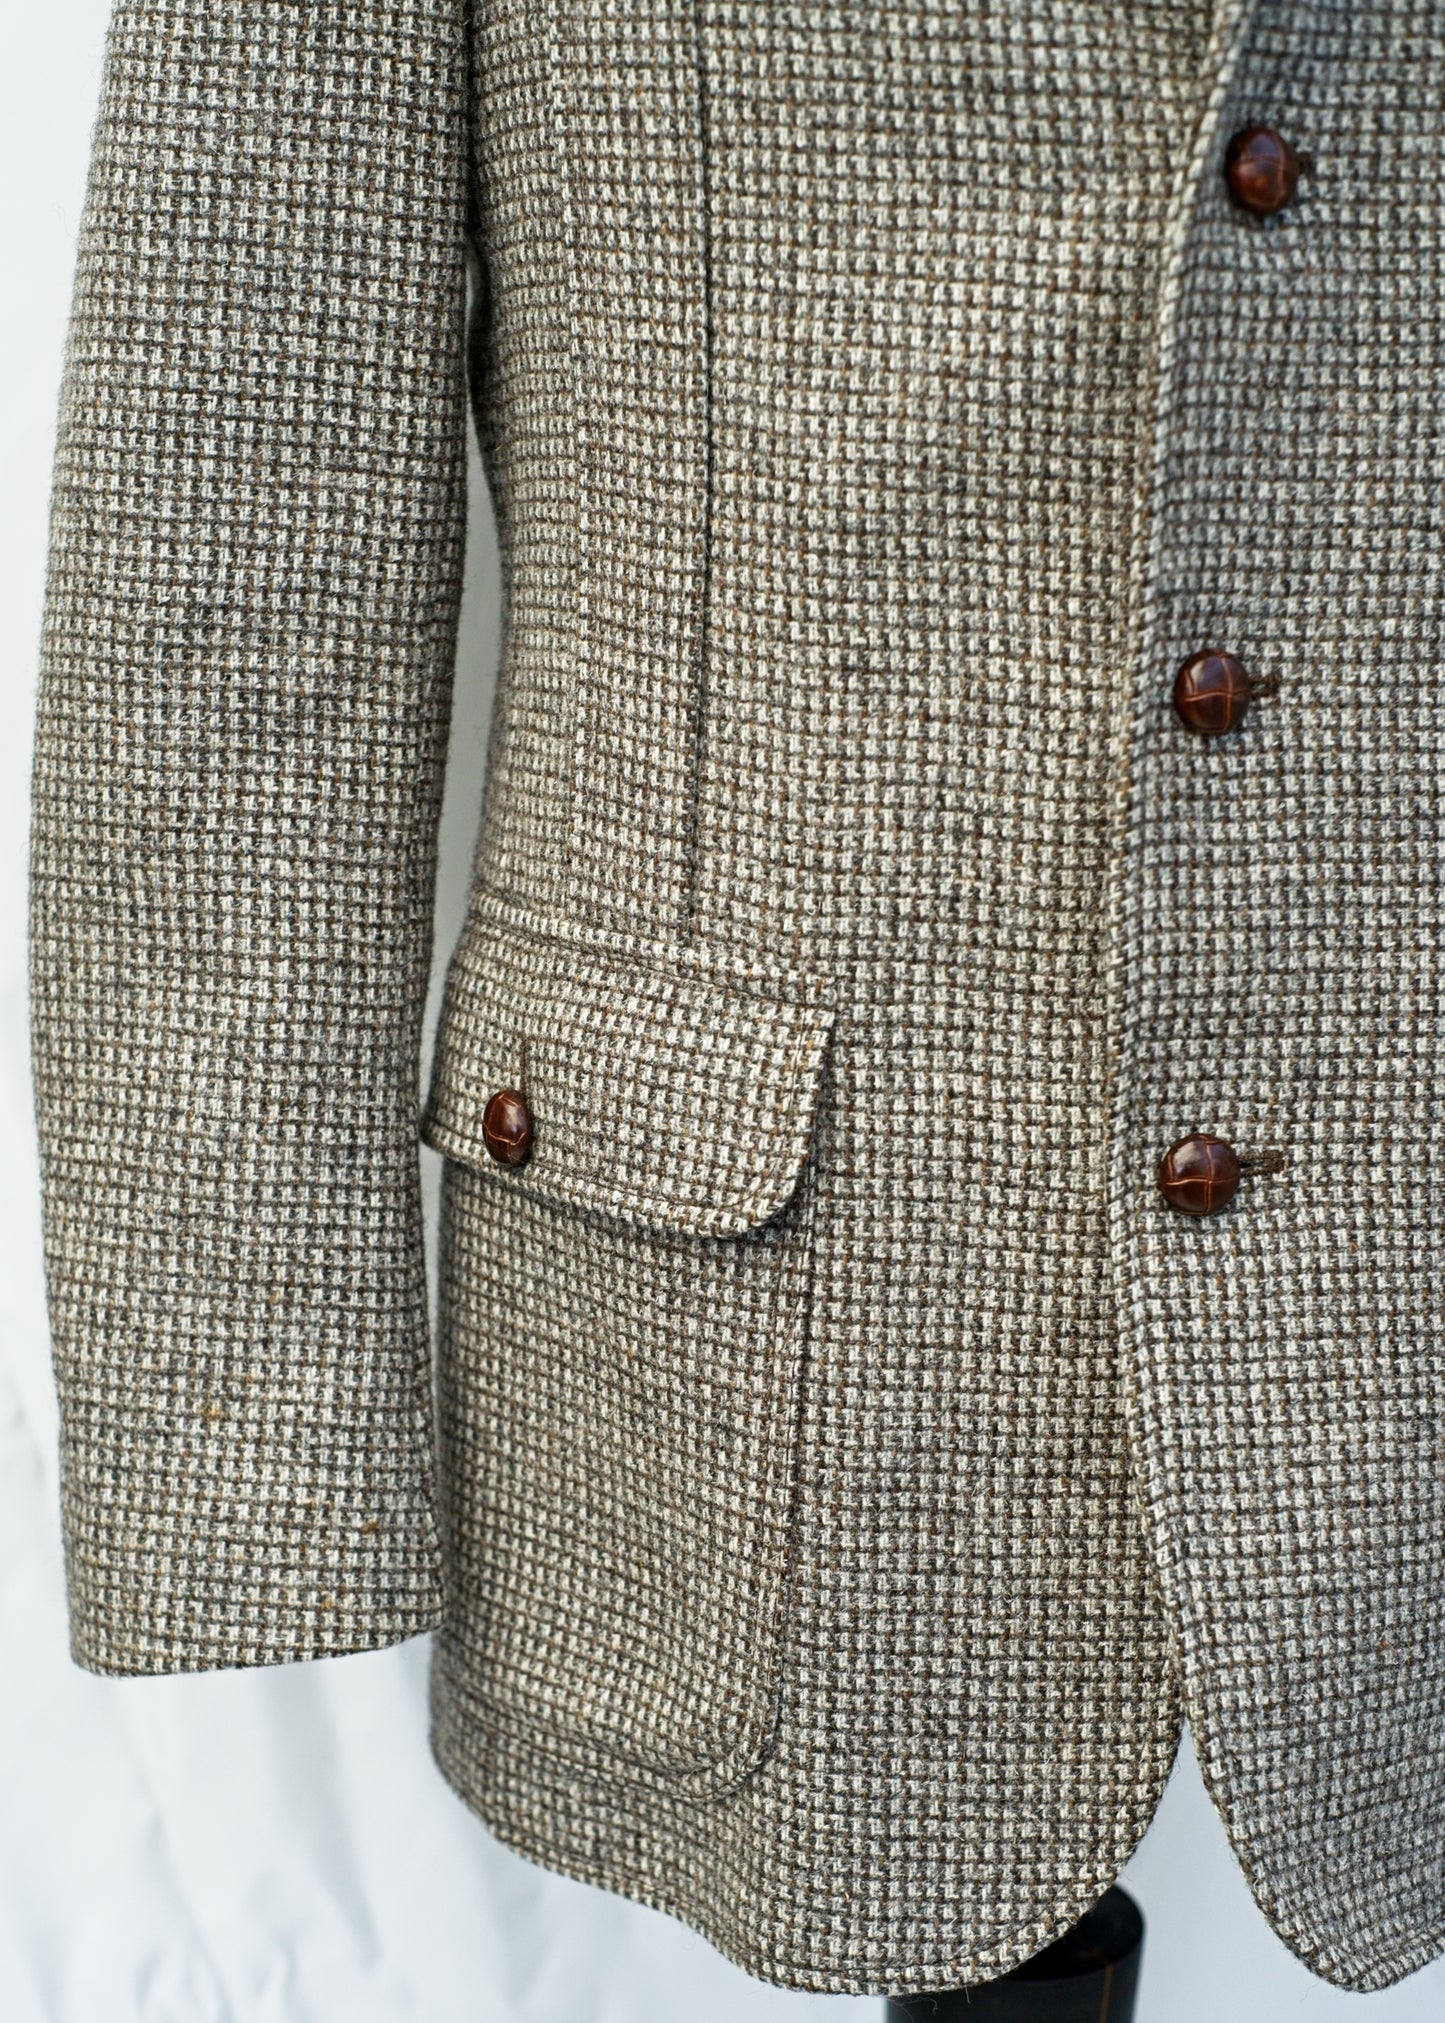 Vintage 70s Tweed Half Norfolk Sports Jacket • St Michael